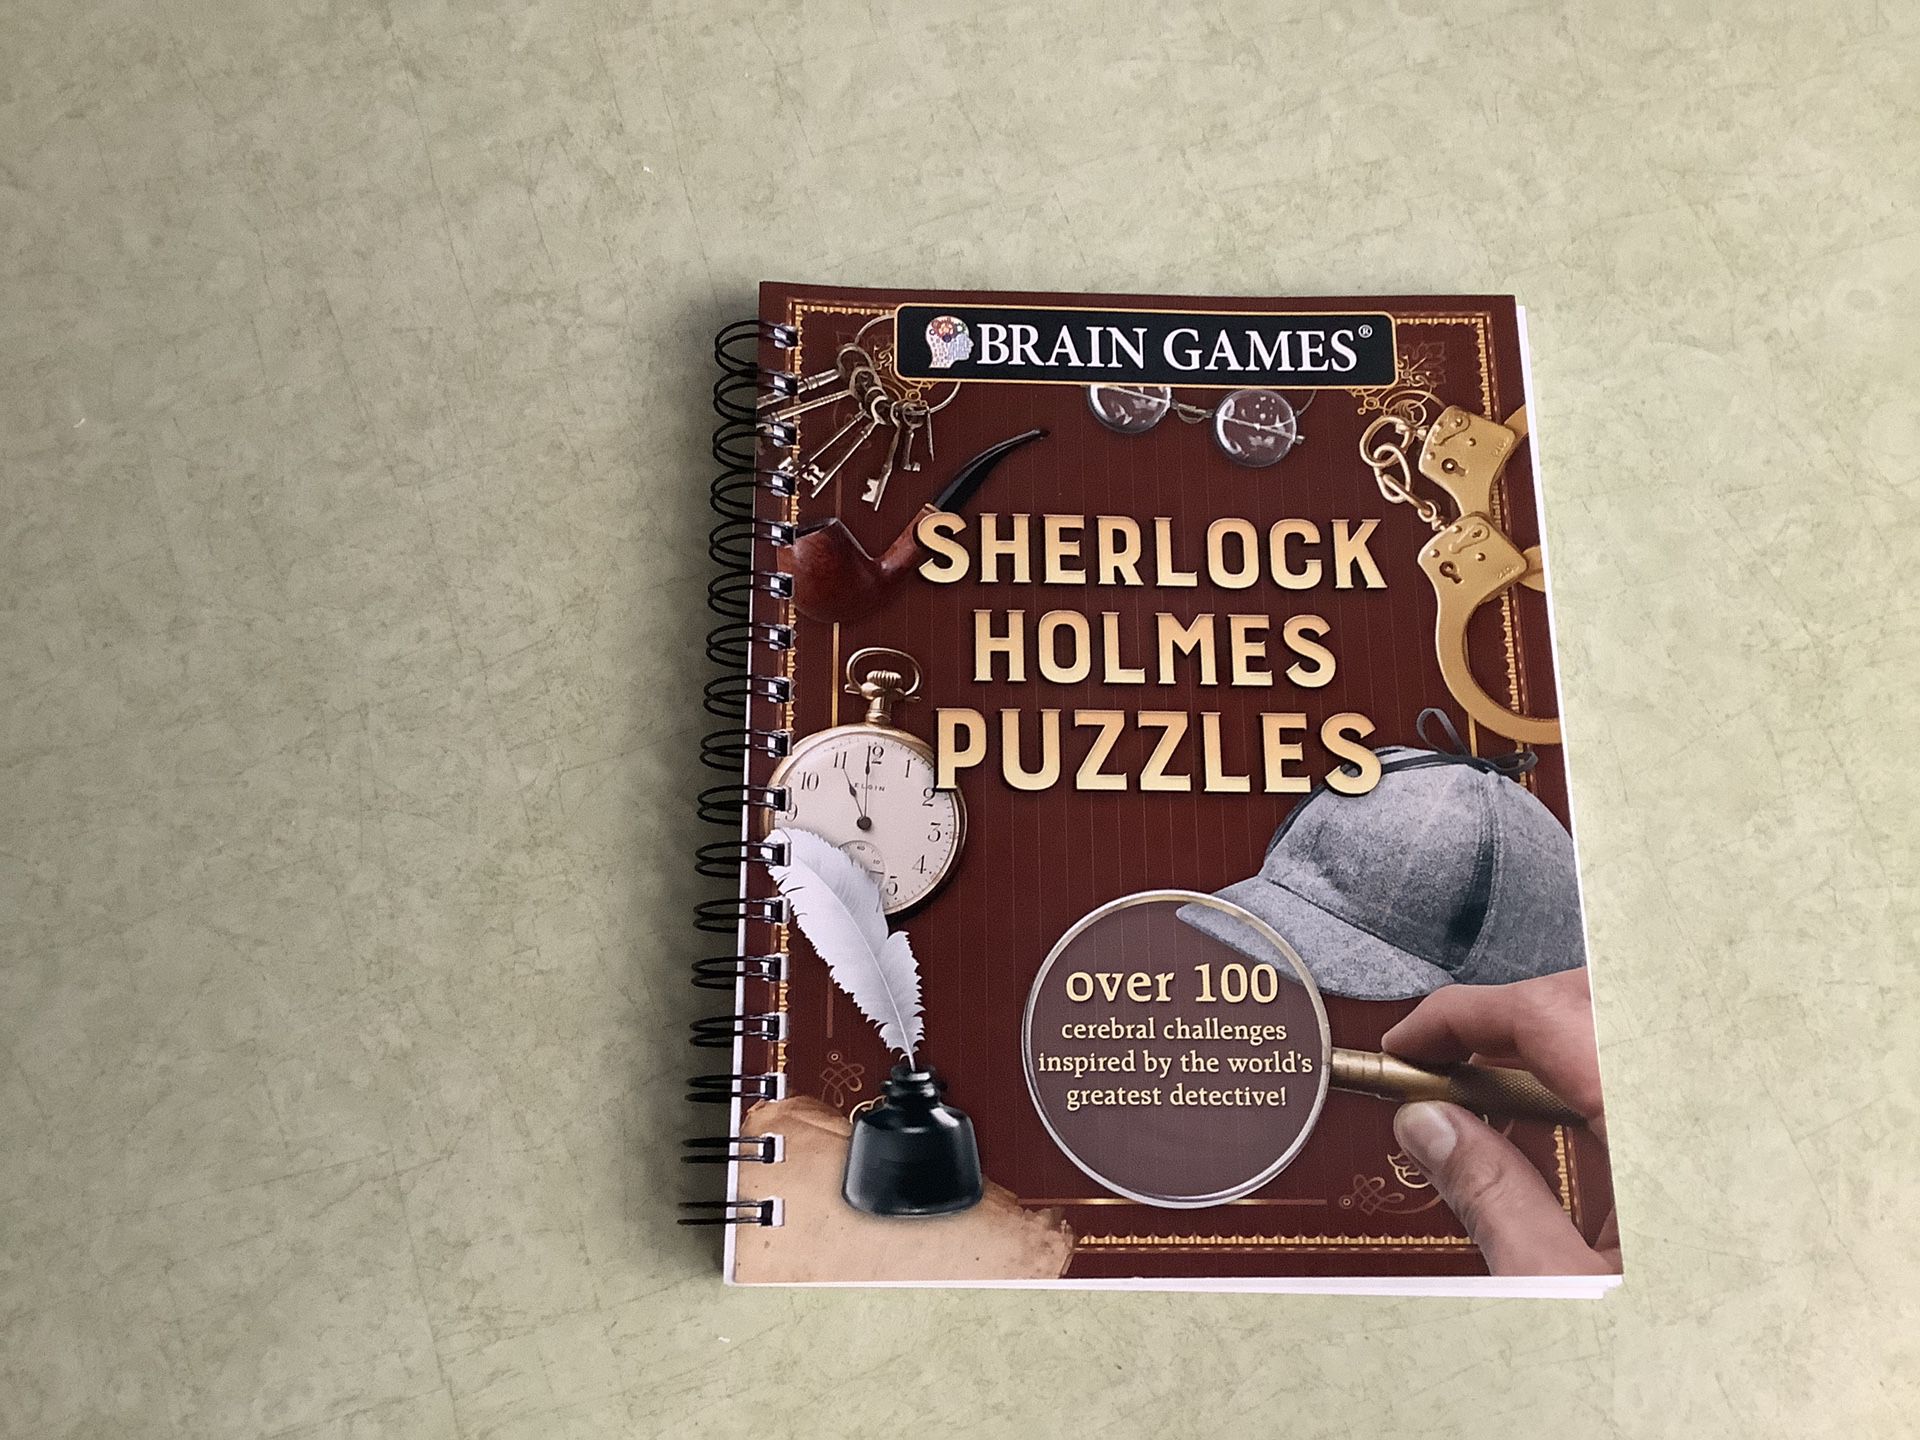 Puzzle book